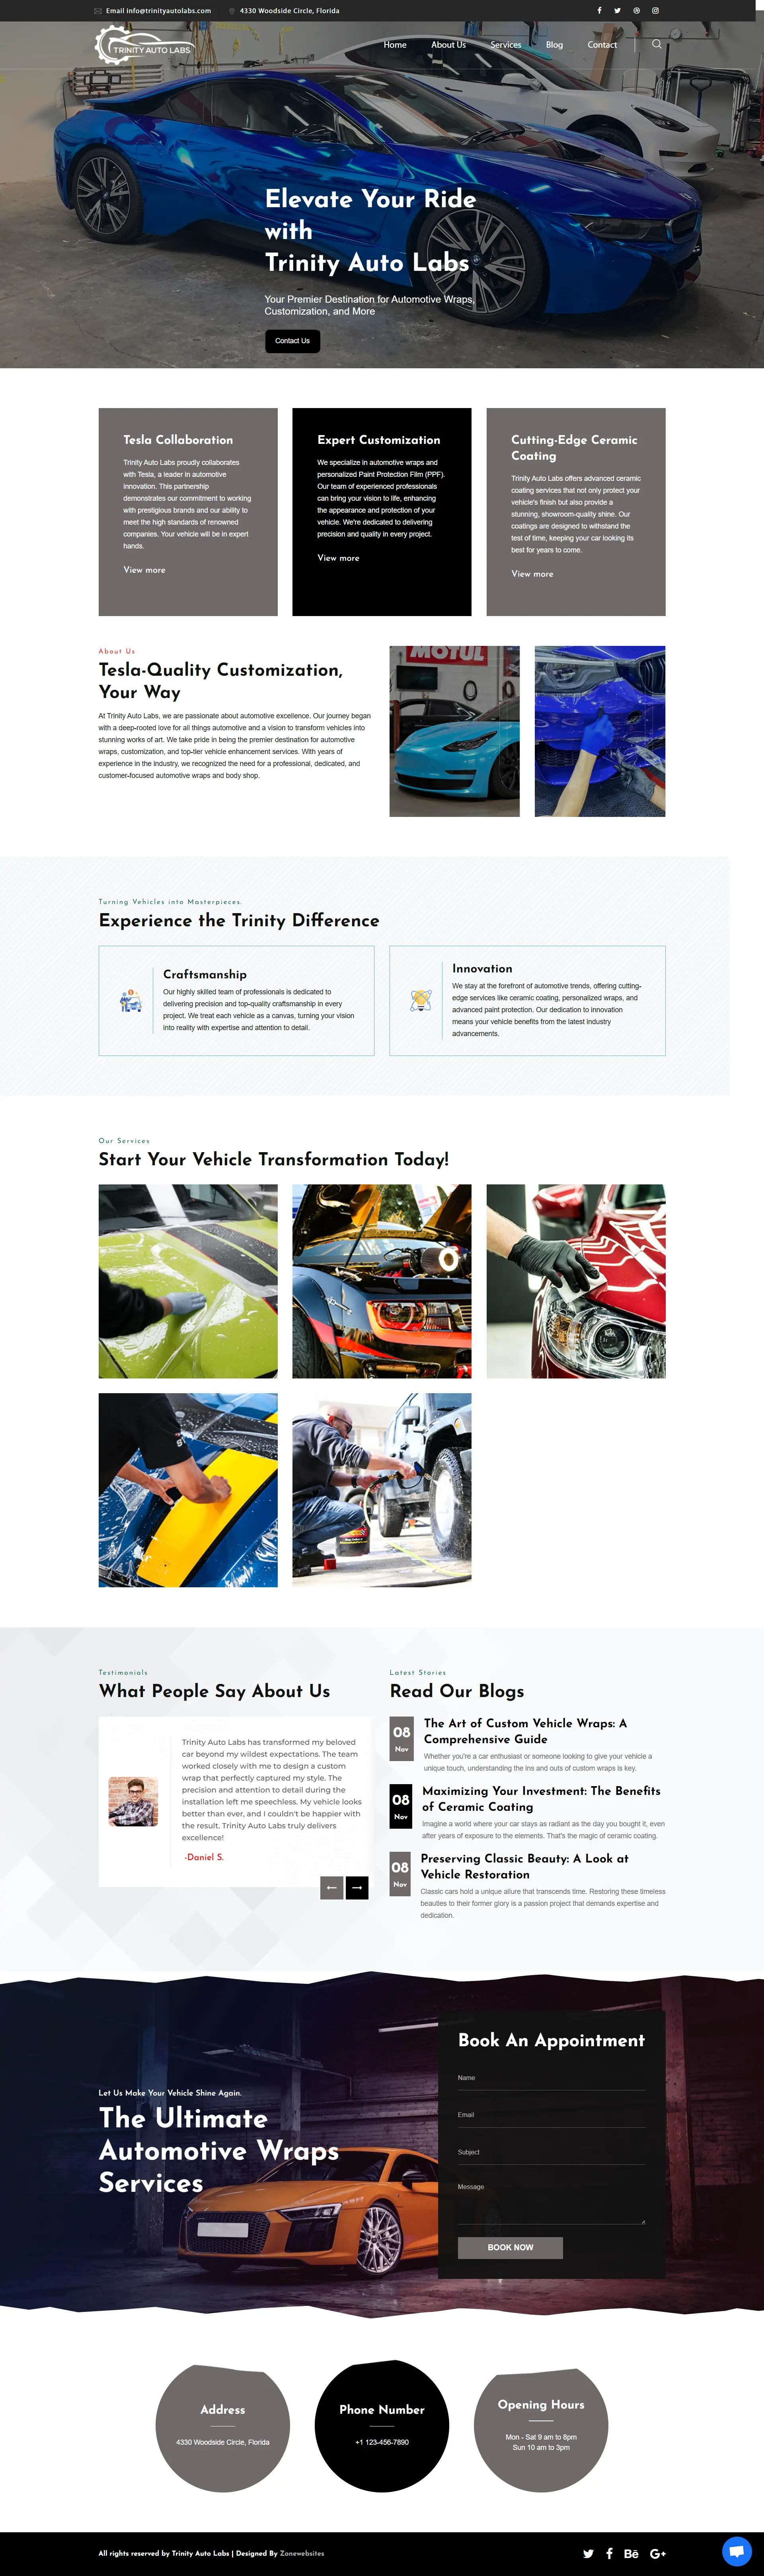 Car Service and Auto Repair Website Design